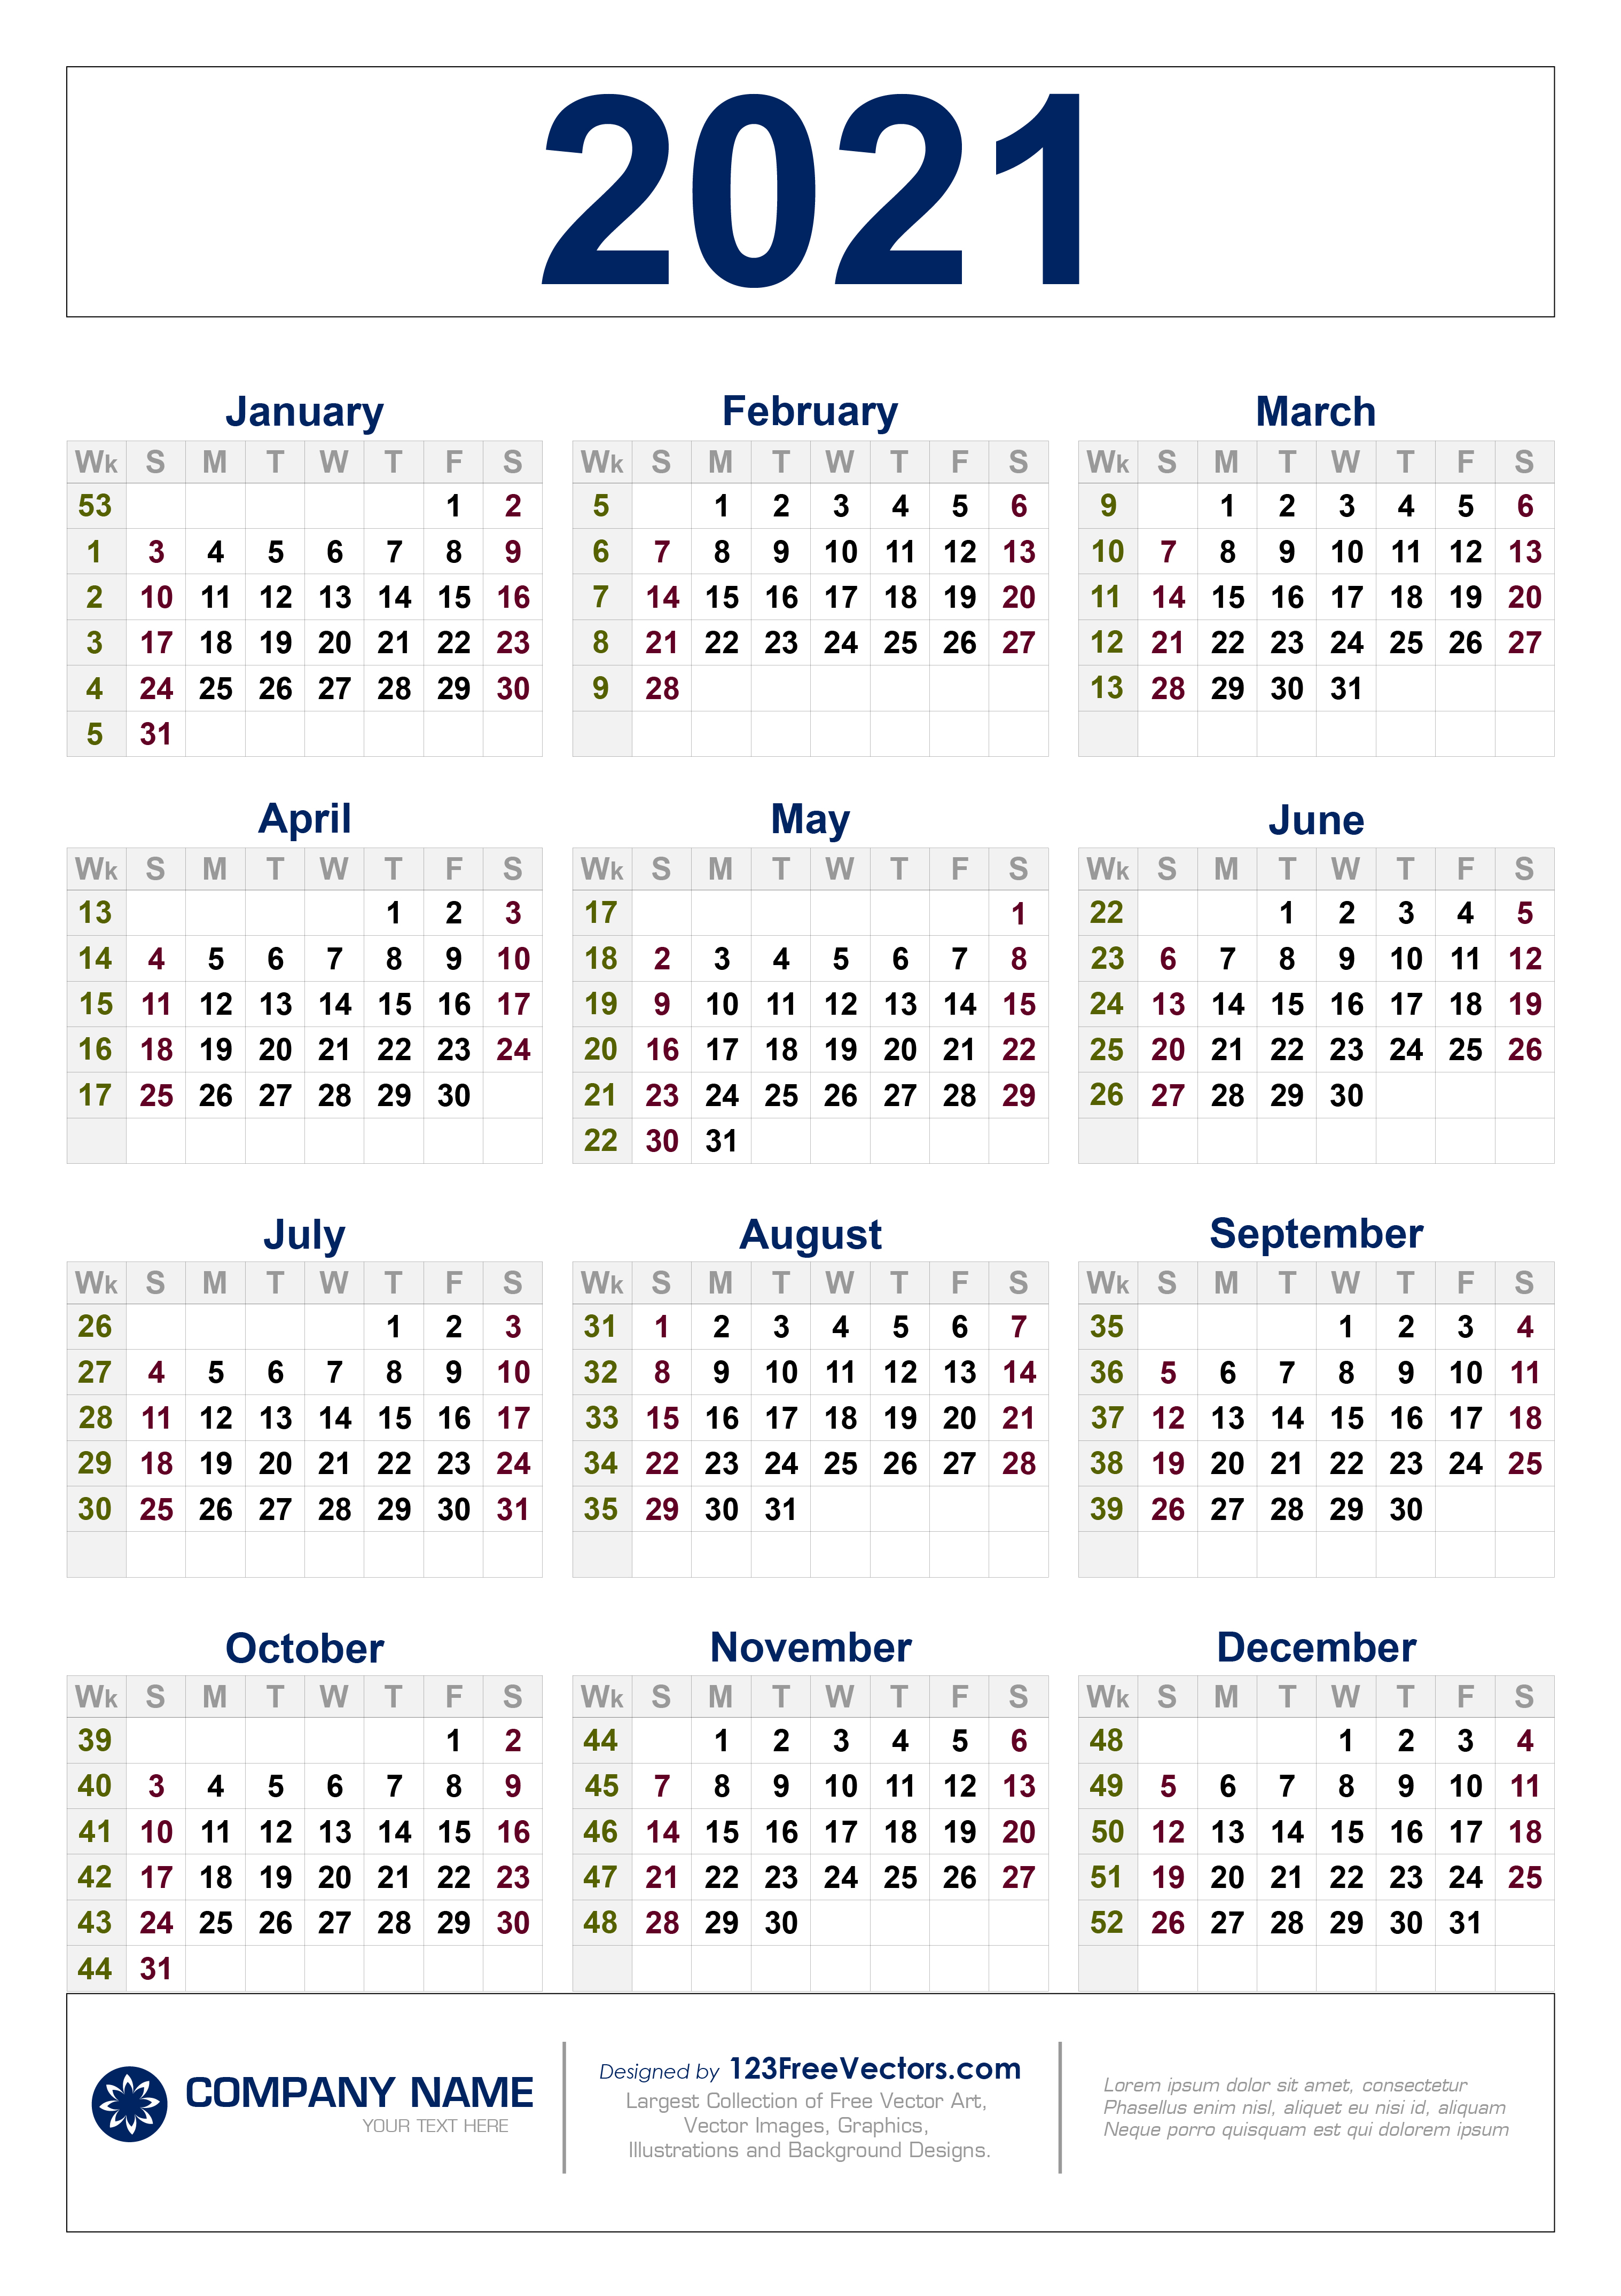 Calendar Weeks 2021 Free Free Download 2021 Calendar with Week Numbers